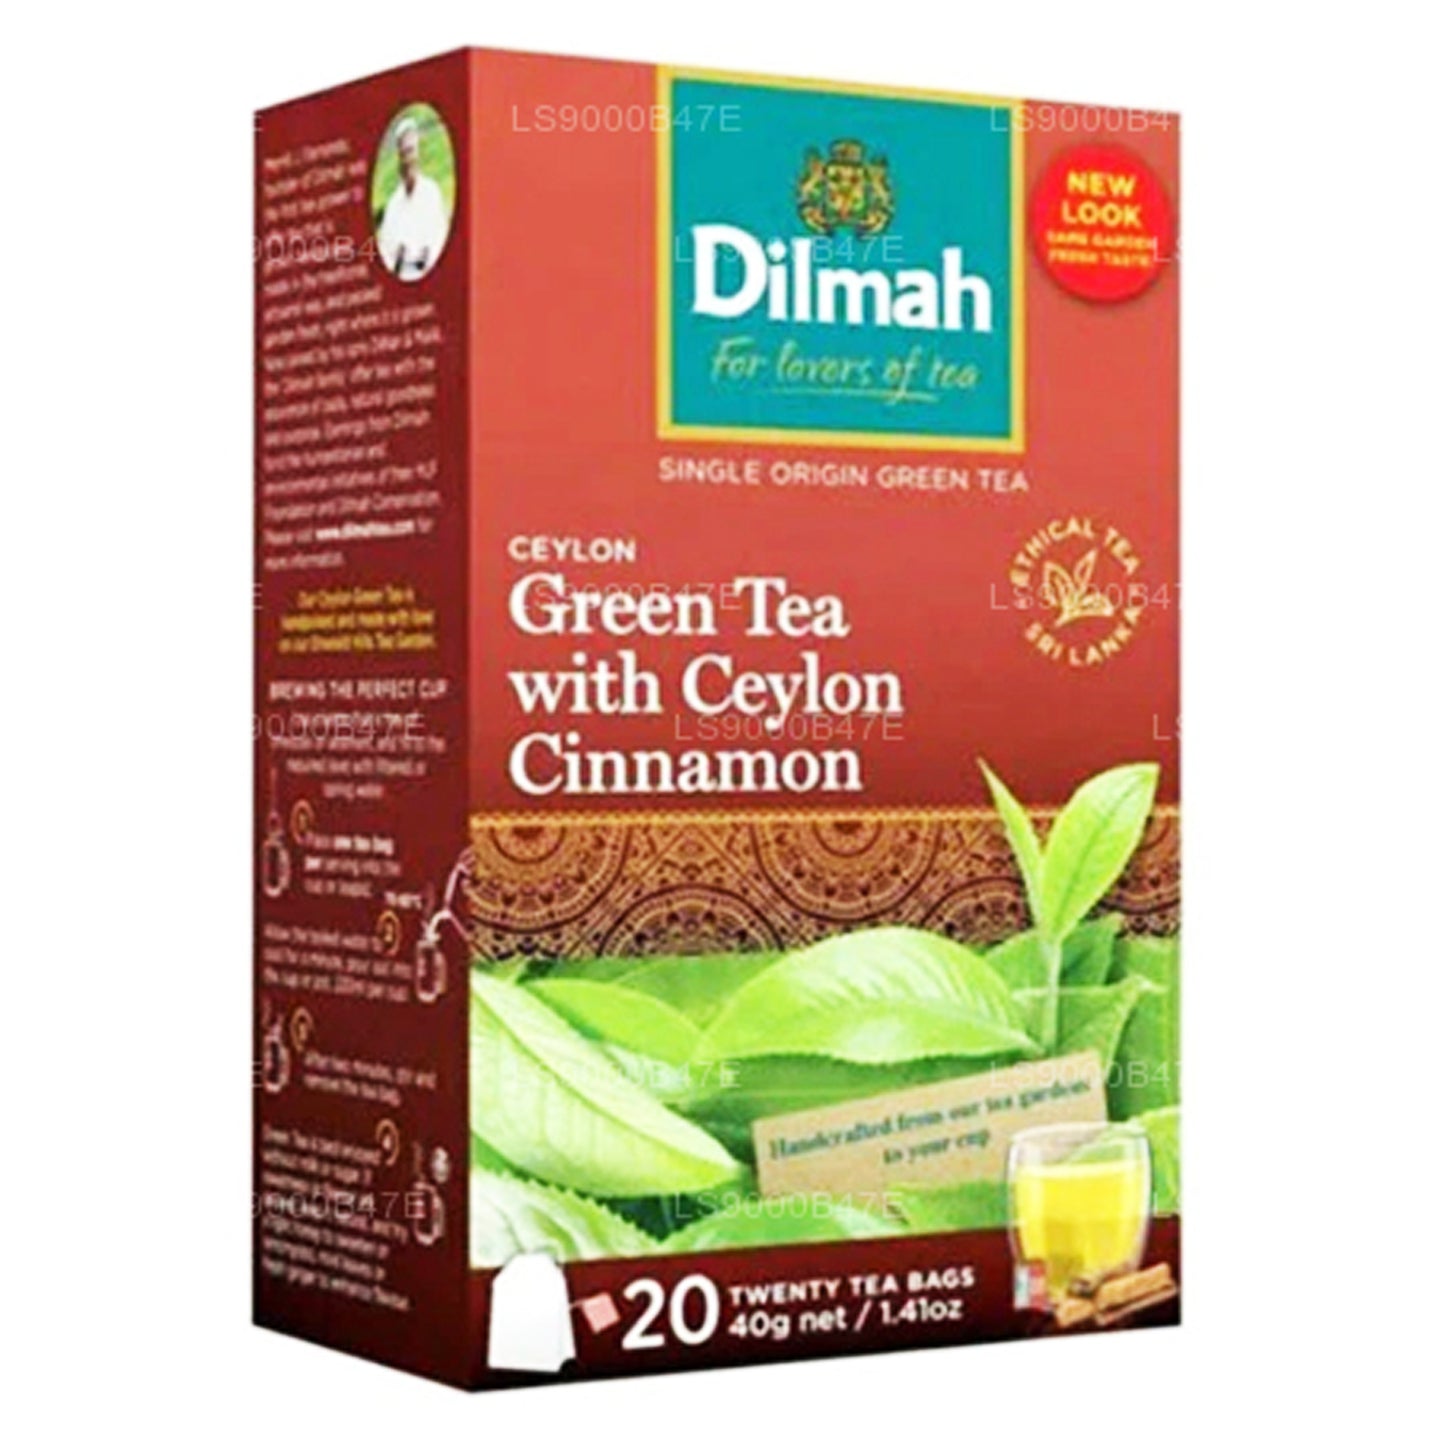 Dilmah Ceylon Zielona Herbata z Cynamonem Cejlońskim (40g) 20 torebek